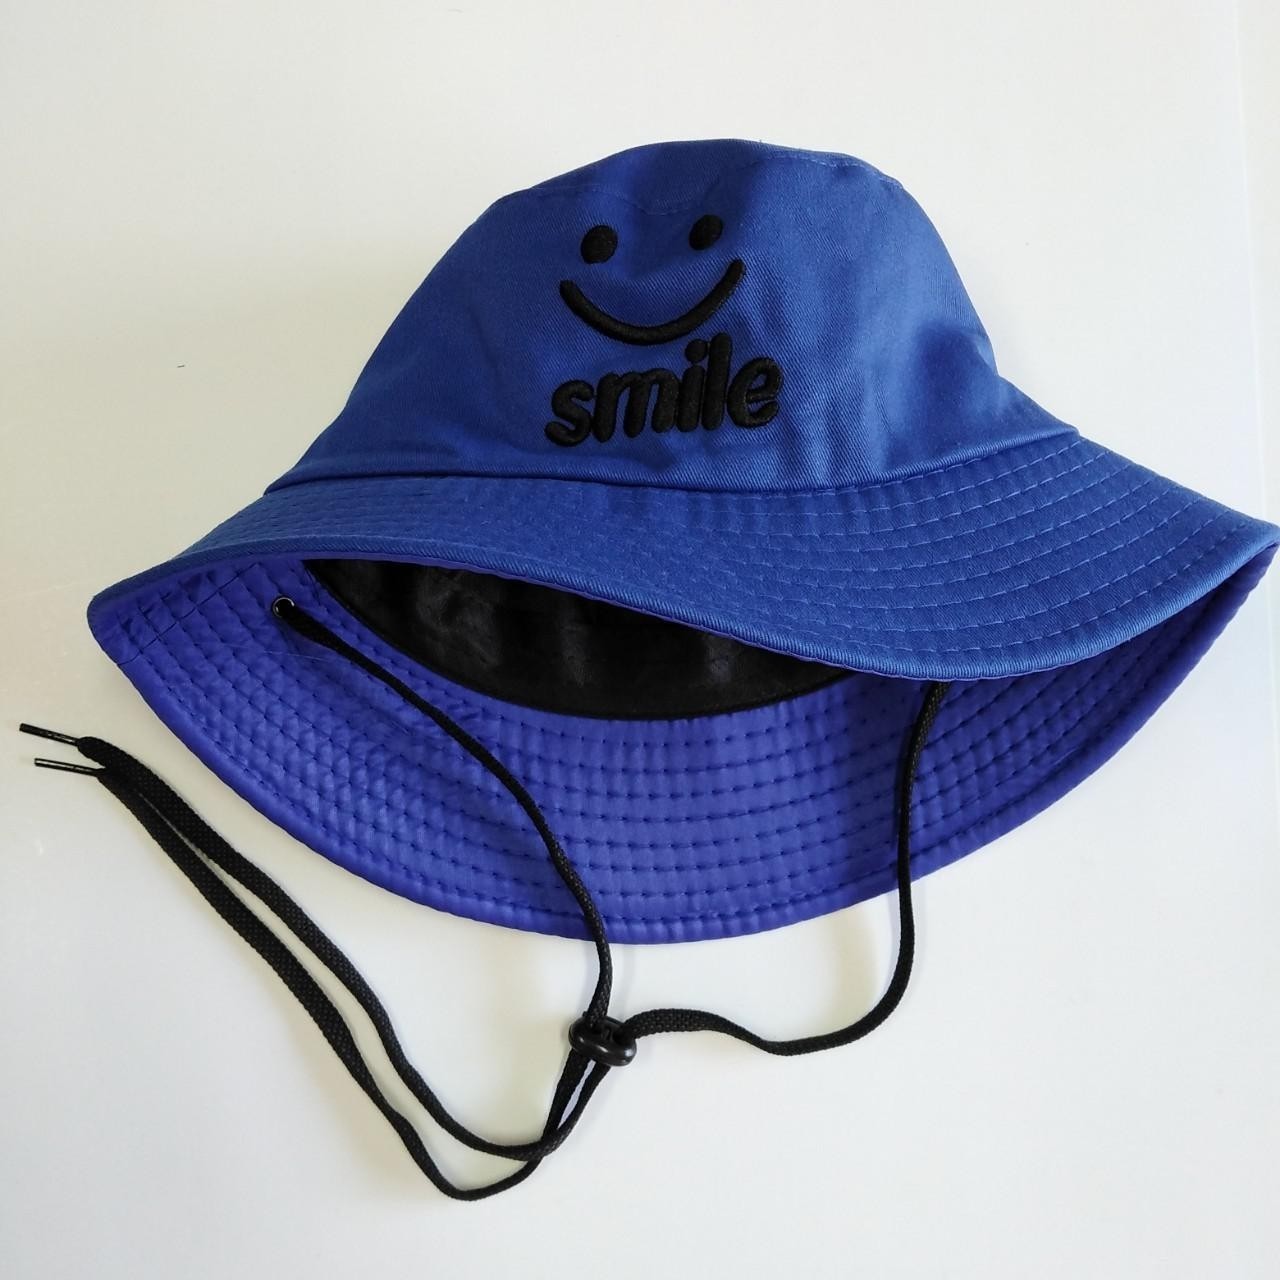 หมวกแฟชั่น หมวก หมวกบักเก็ตมีสาย (ยิ้มSmle) หมวกกันแดด หมวกบักเก็ต AM0025